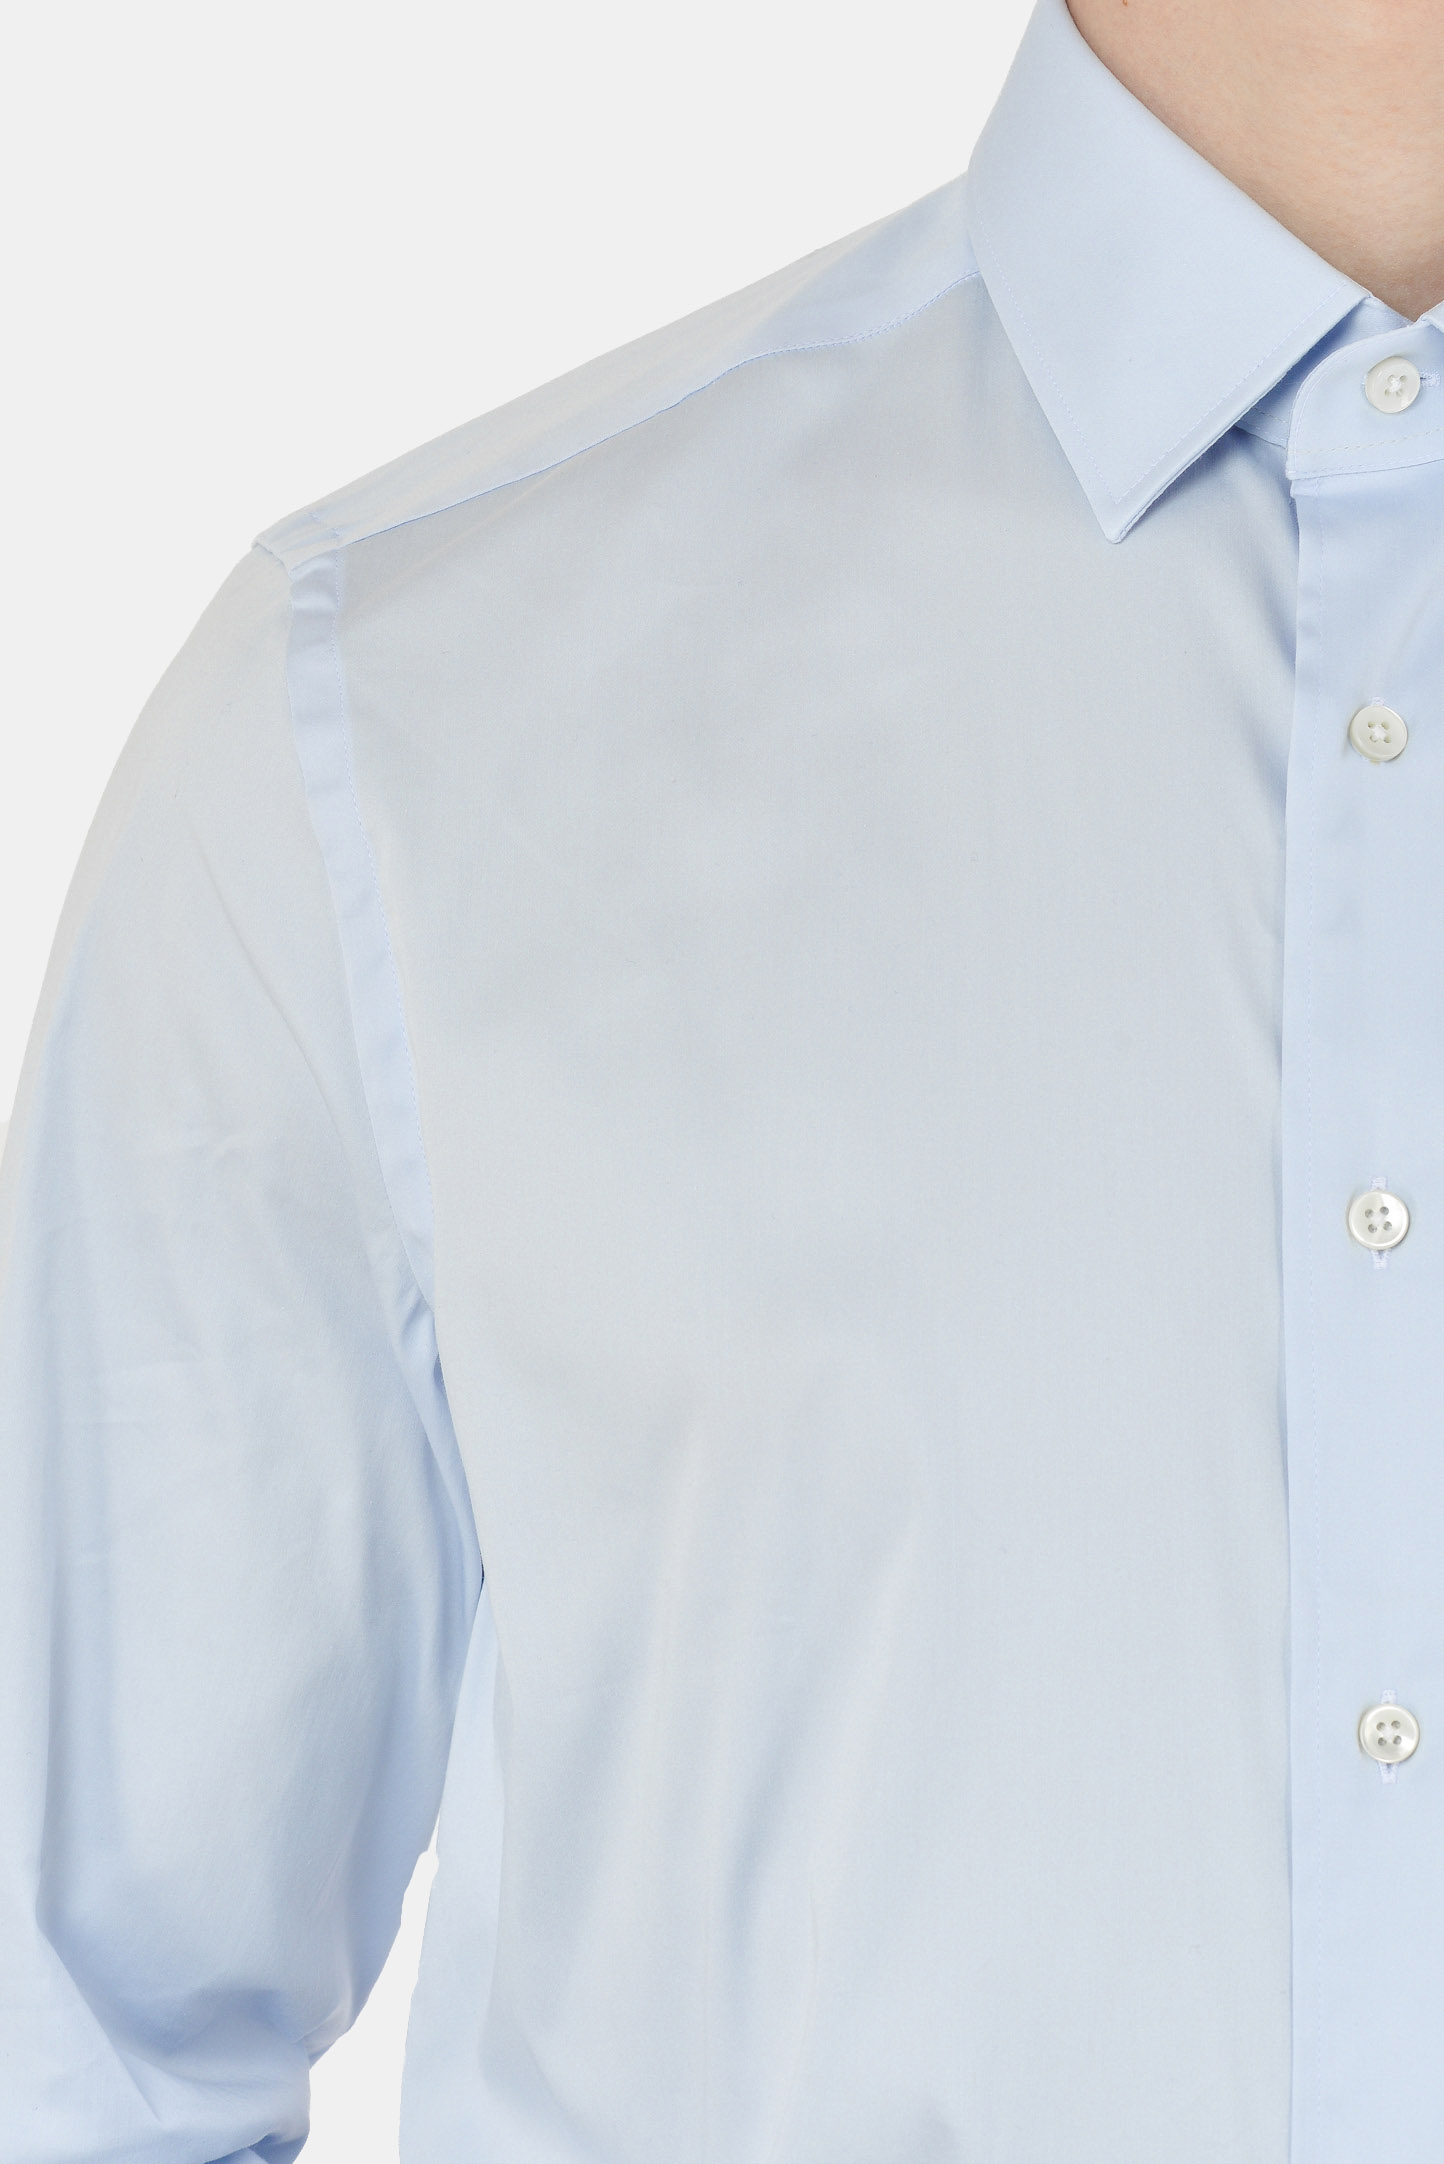 Рубашка CANALI GA00103/401, цвет: Голубой, Мужской